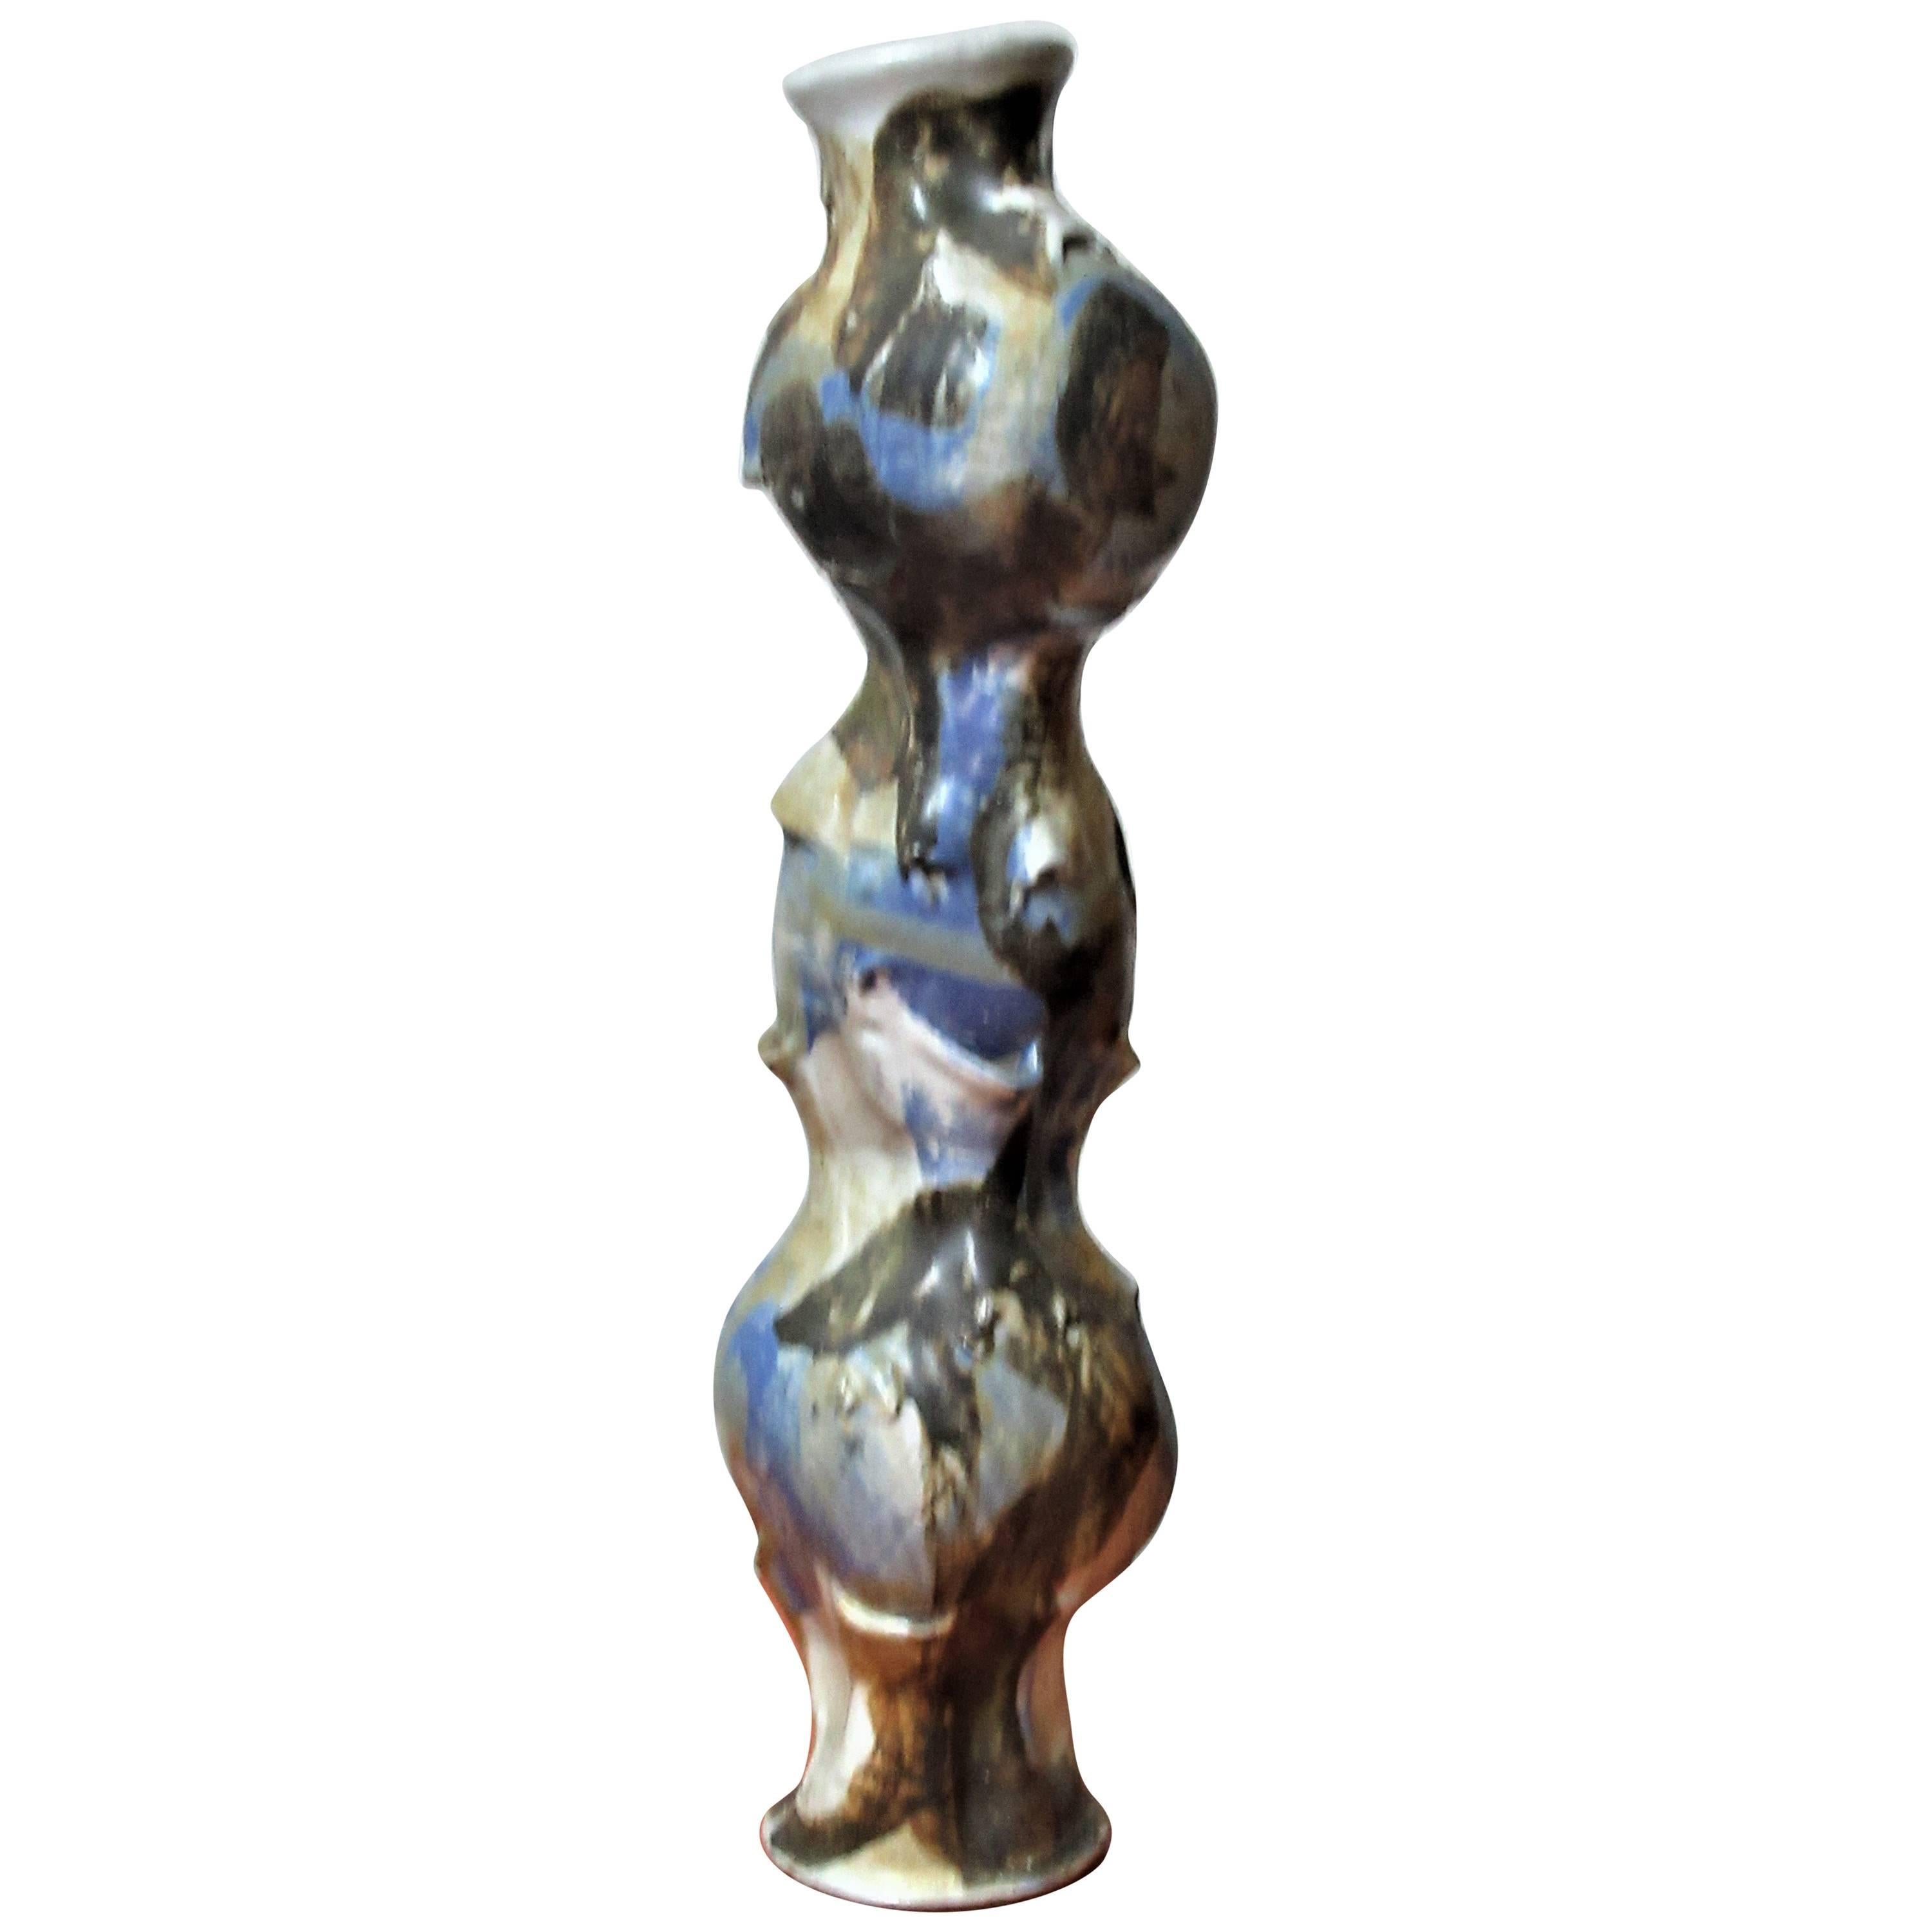 American Studio Ceramic Sculptural Totemic Vessel